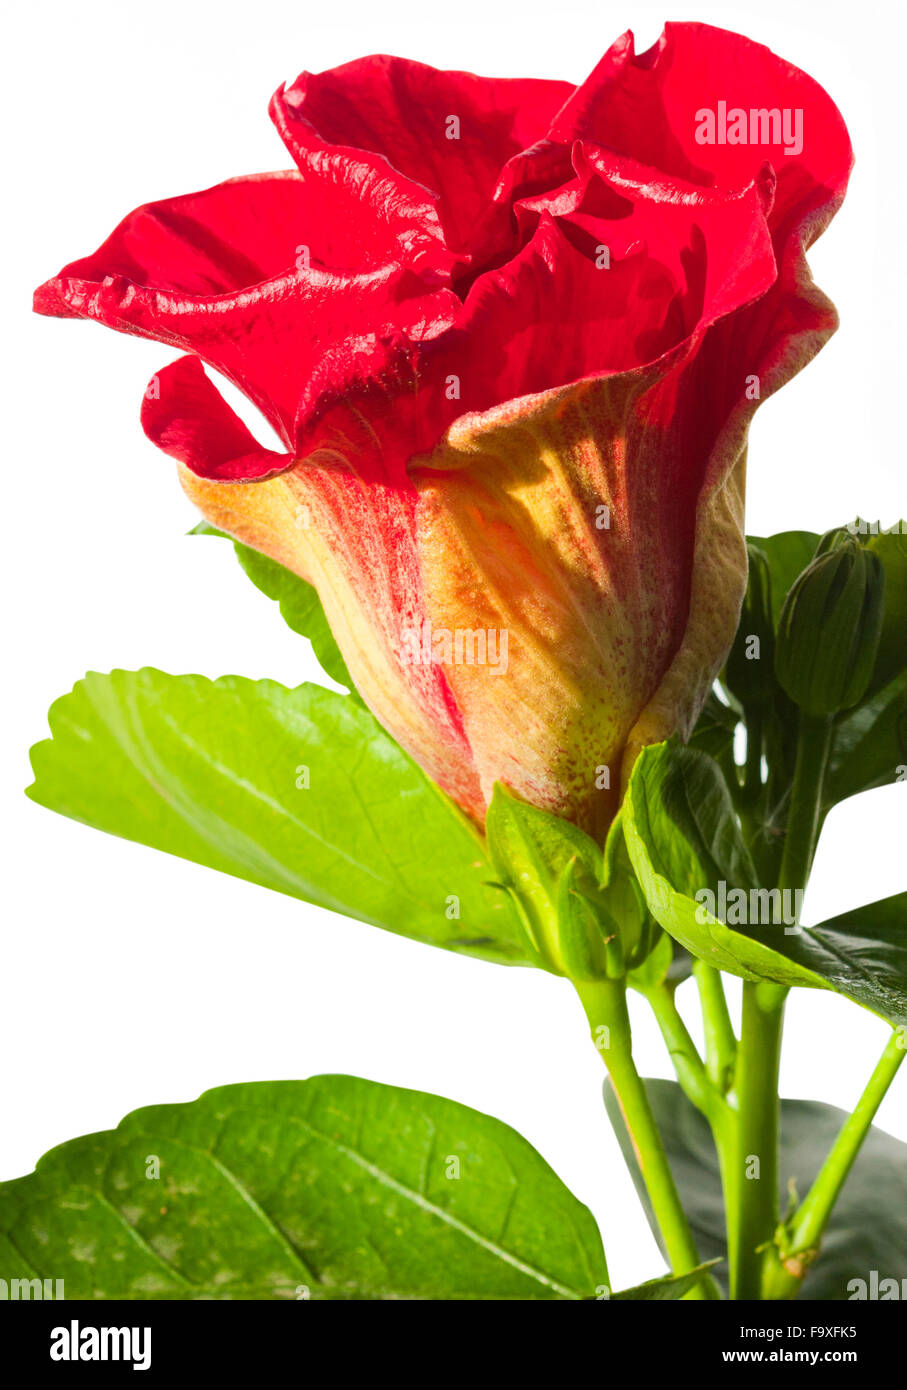 single hibiscus flower Spanish Lady on white background Stock Photo